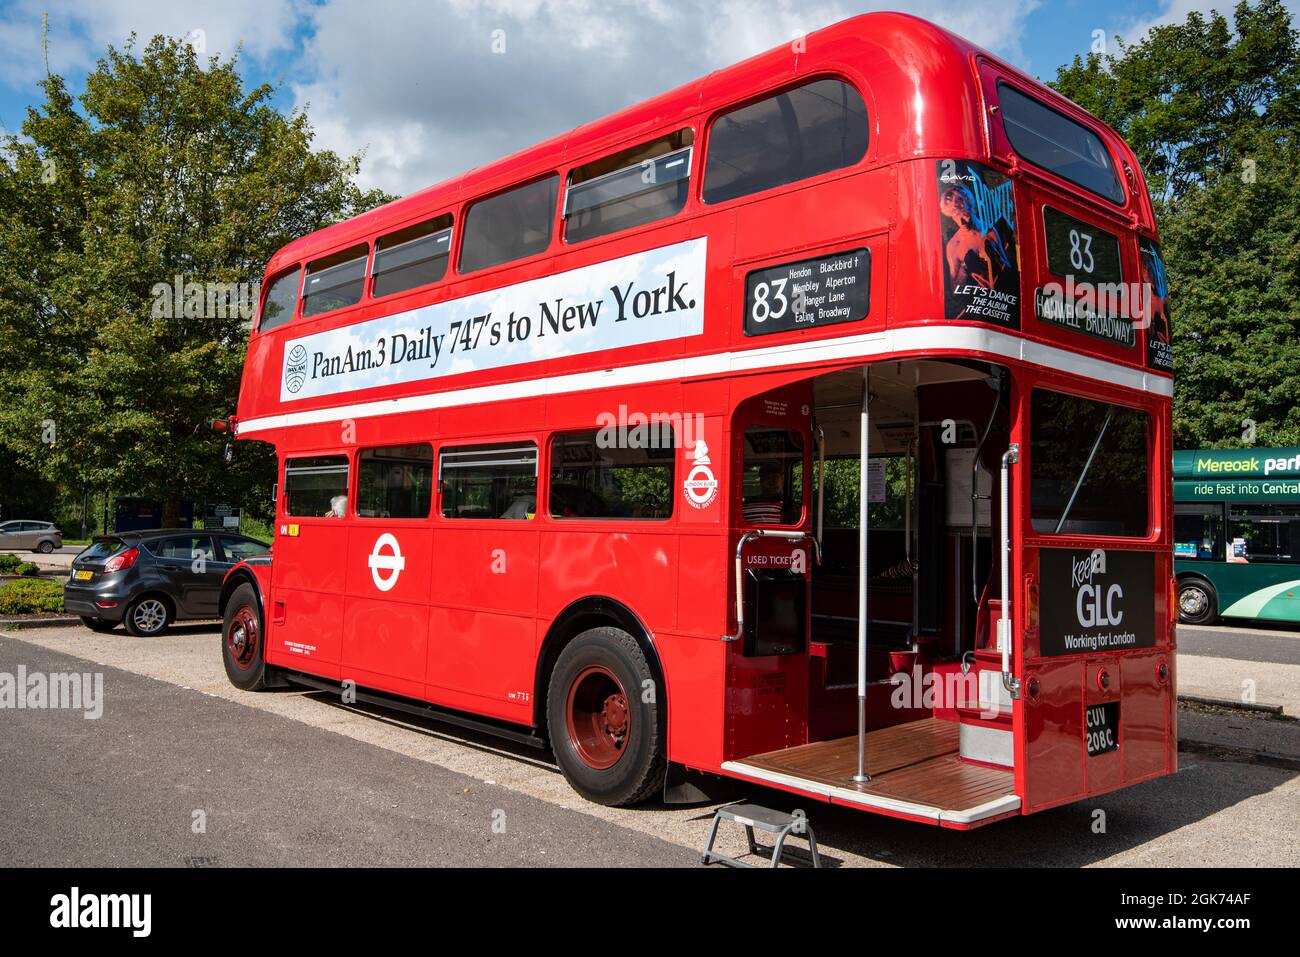 Un classico autobus a due piani rosso di Londra con un annuncio d'epoca per i voli Pan Am per New York su 747s a lato, Winchester, Regno Unito Foto Stock